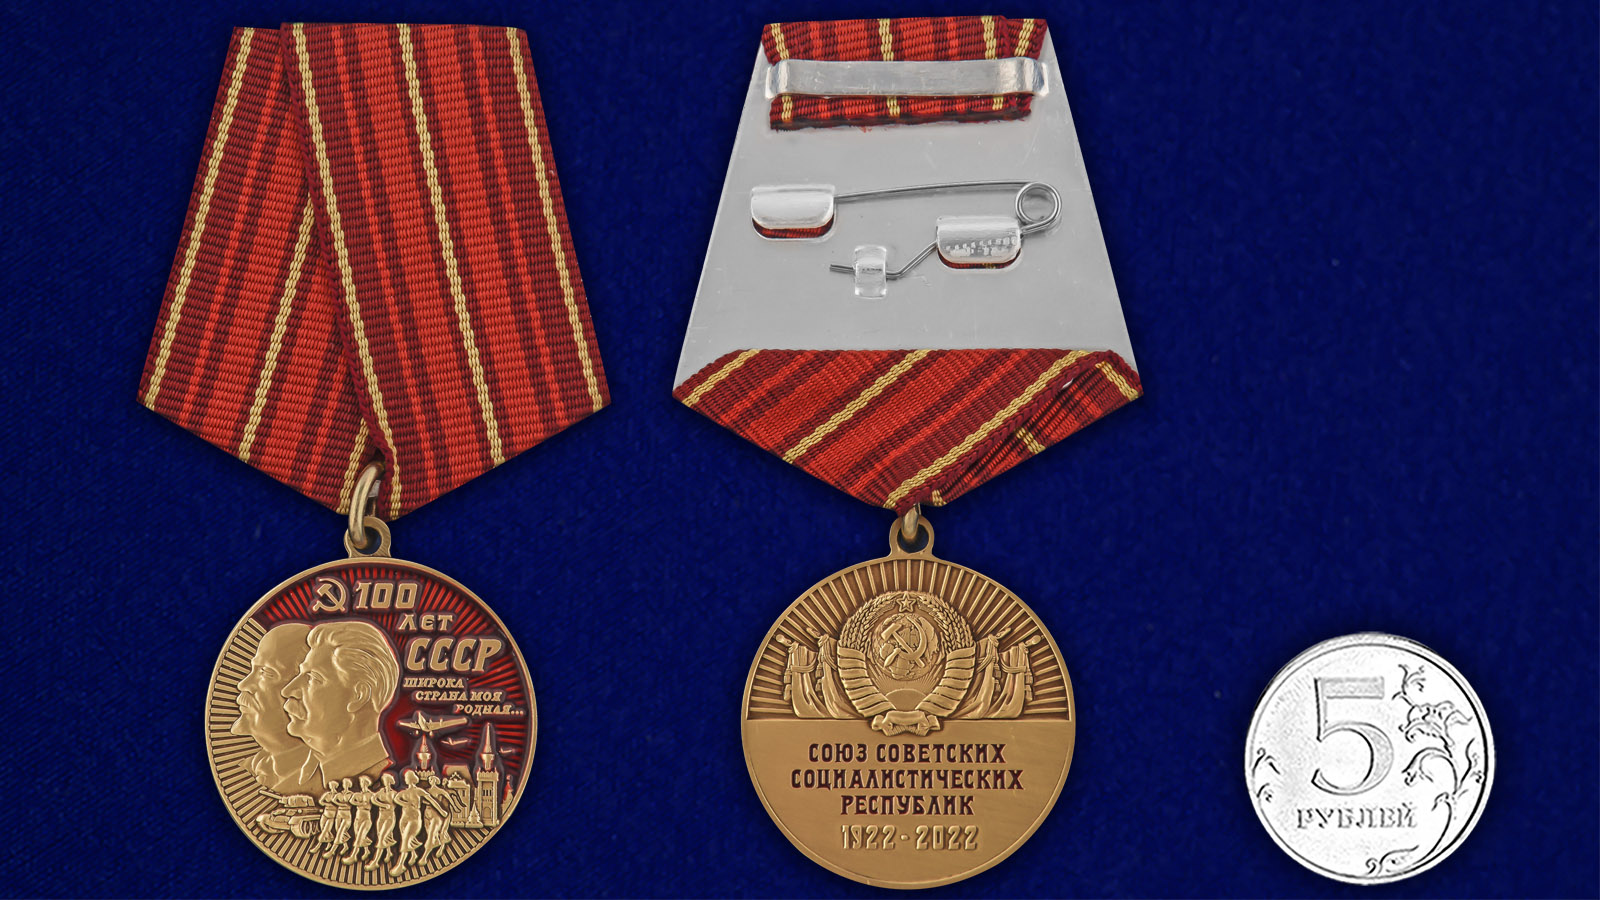 Купить медаль "100 лет СССР" онлайн выгодно